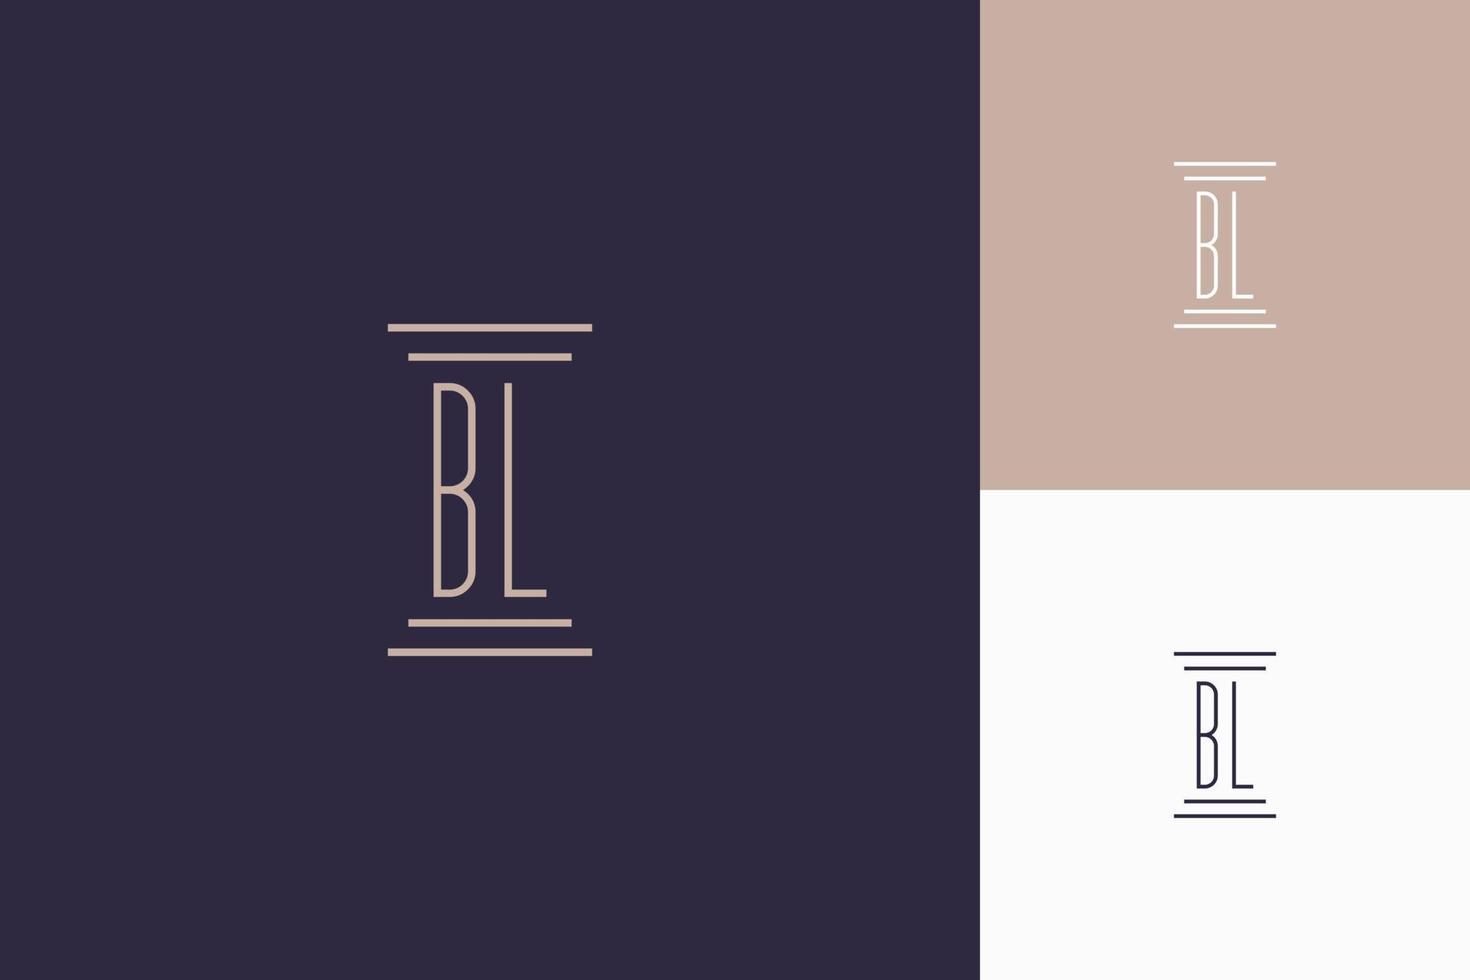 conception des initiales du monogramme bl pour le logo du cabinet d'avocats vecteur